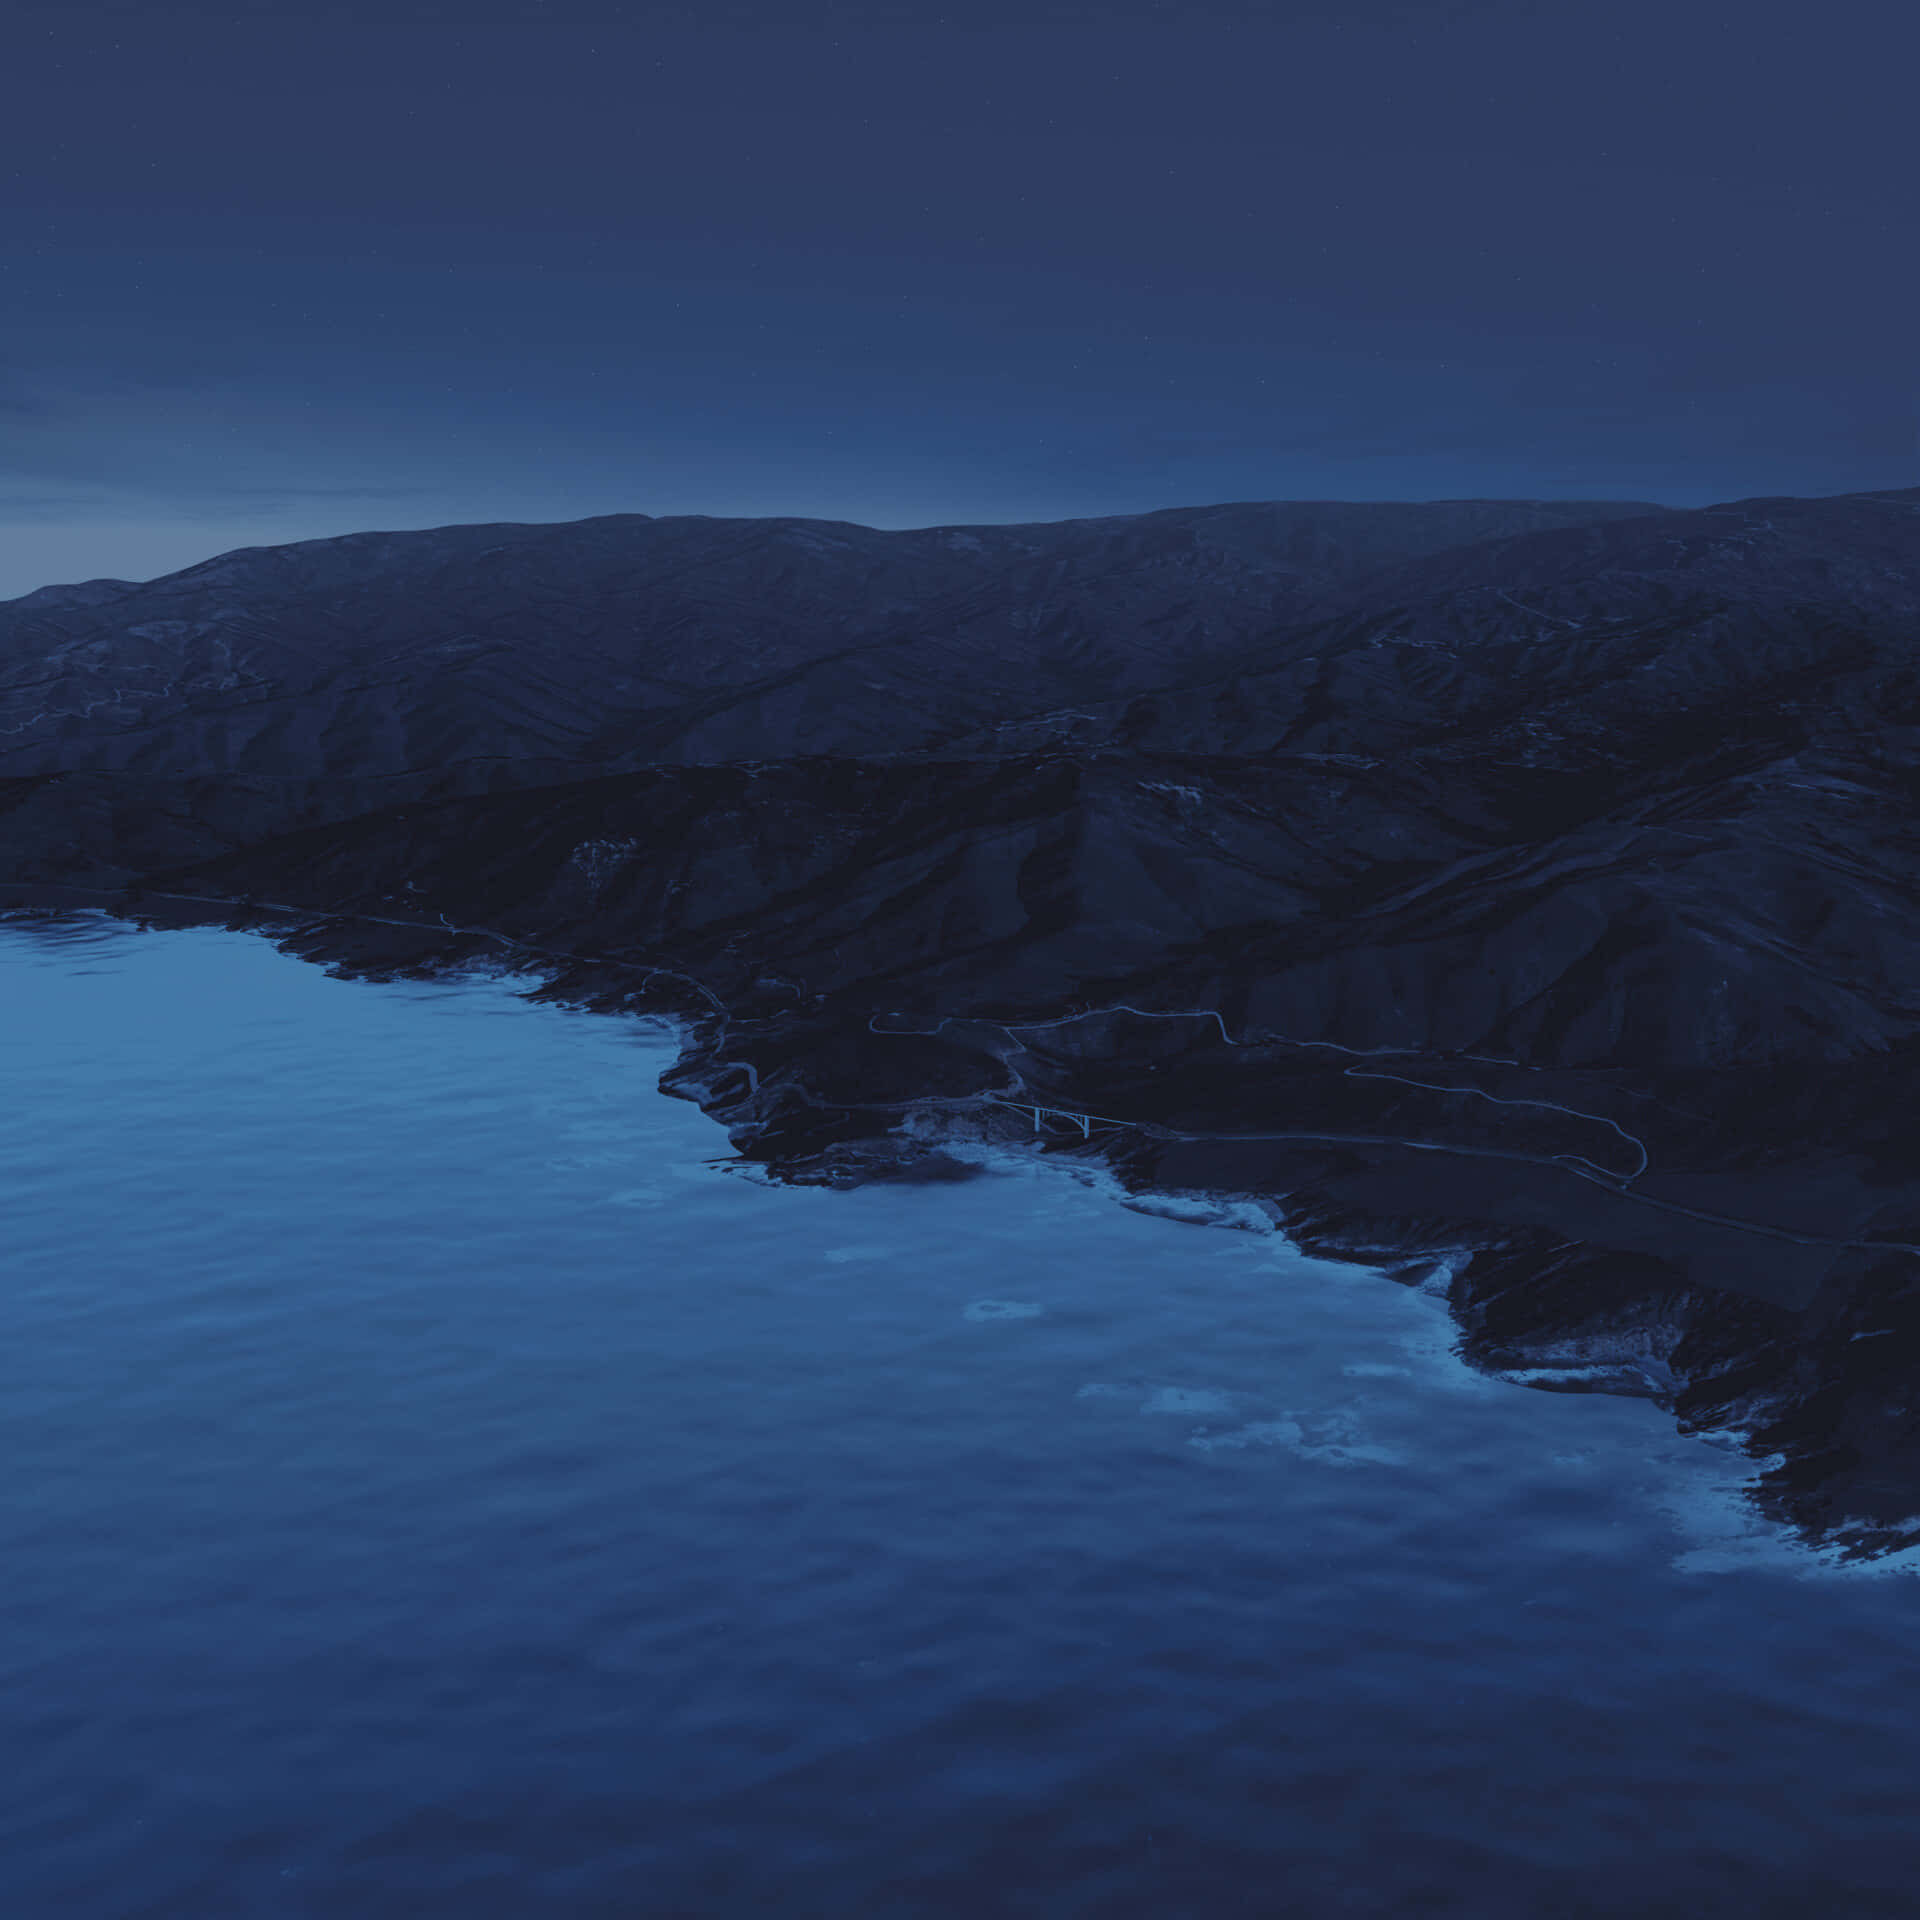 Download Stunning macOS Big Sur Landscape Background | Wallpapers.com